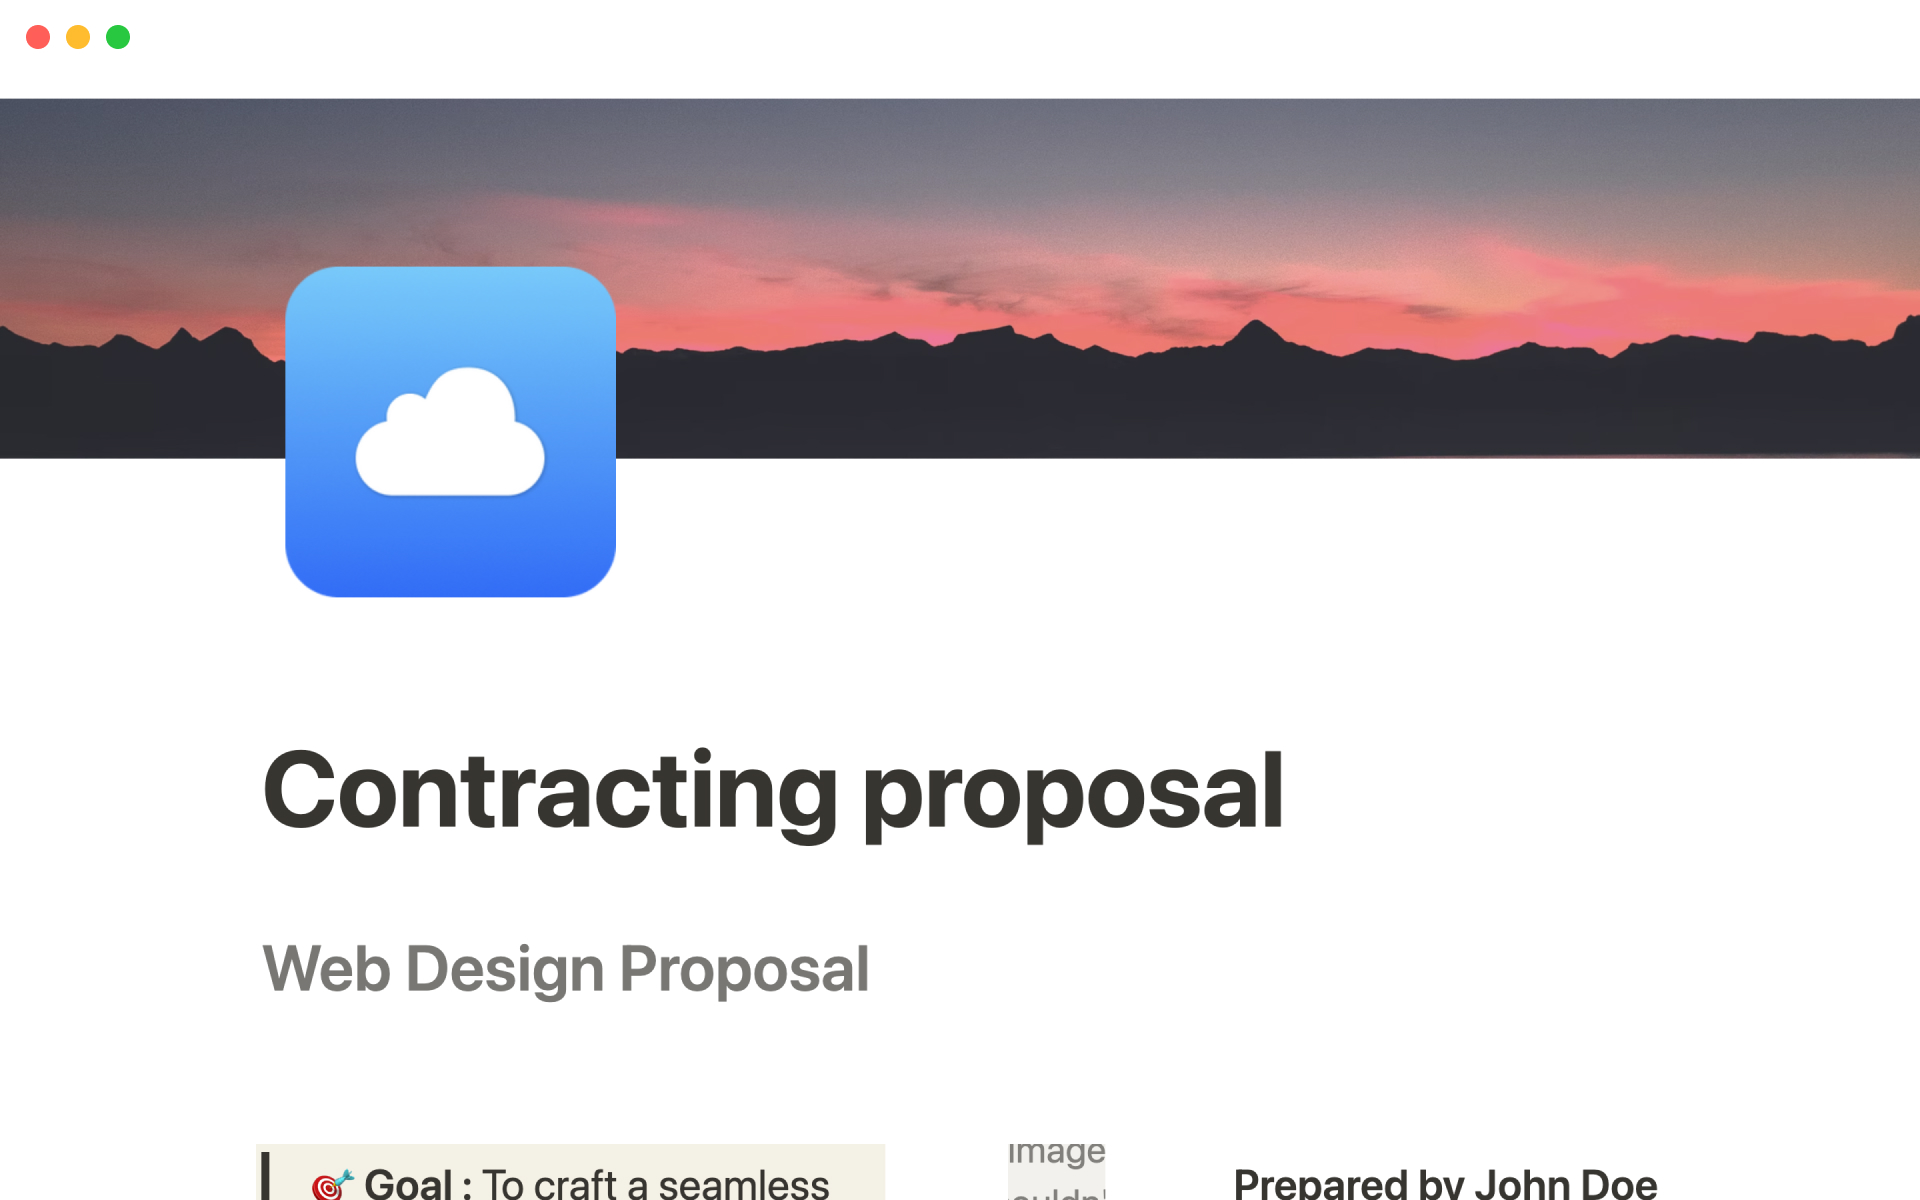 Contracting proposalのテンプレートのプレビュー